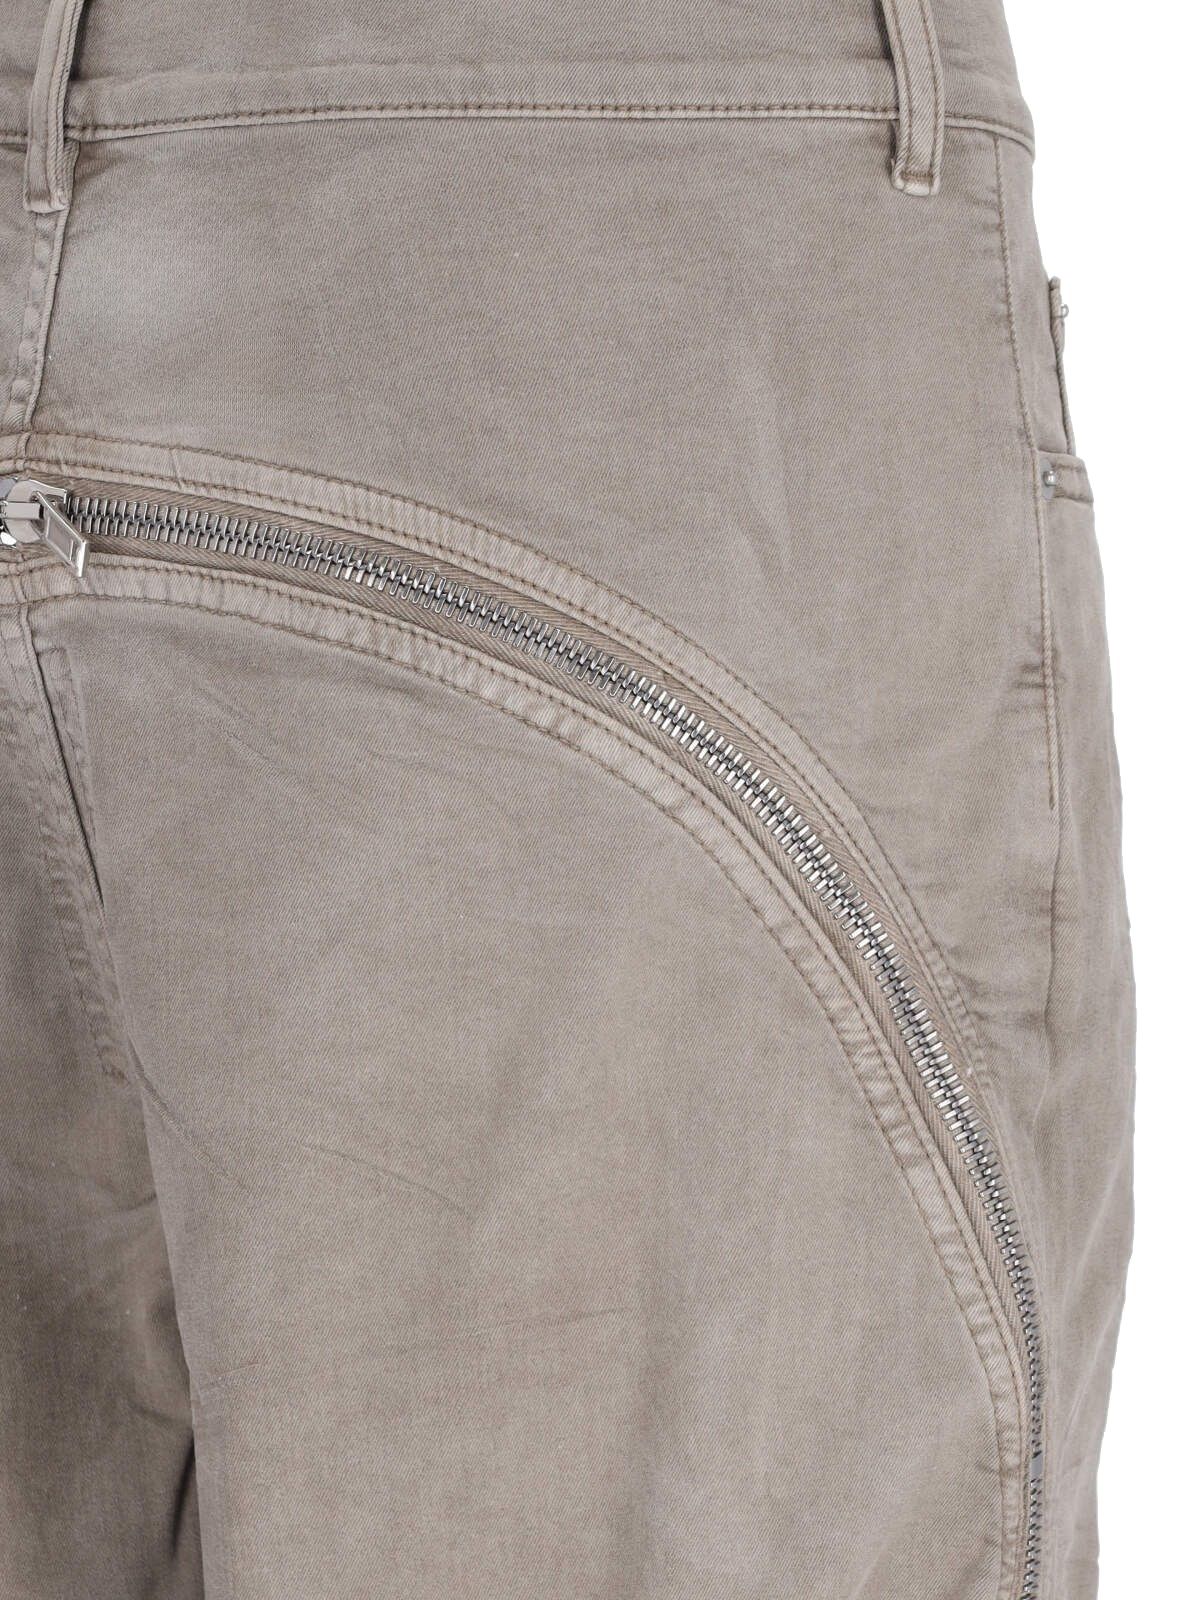 Jeans dettaglio zip